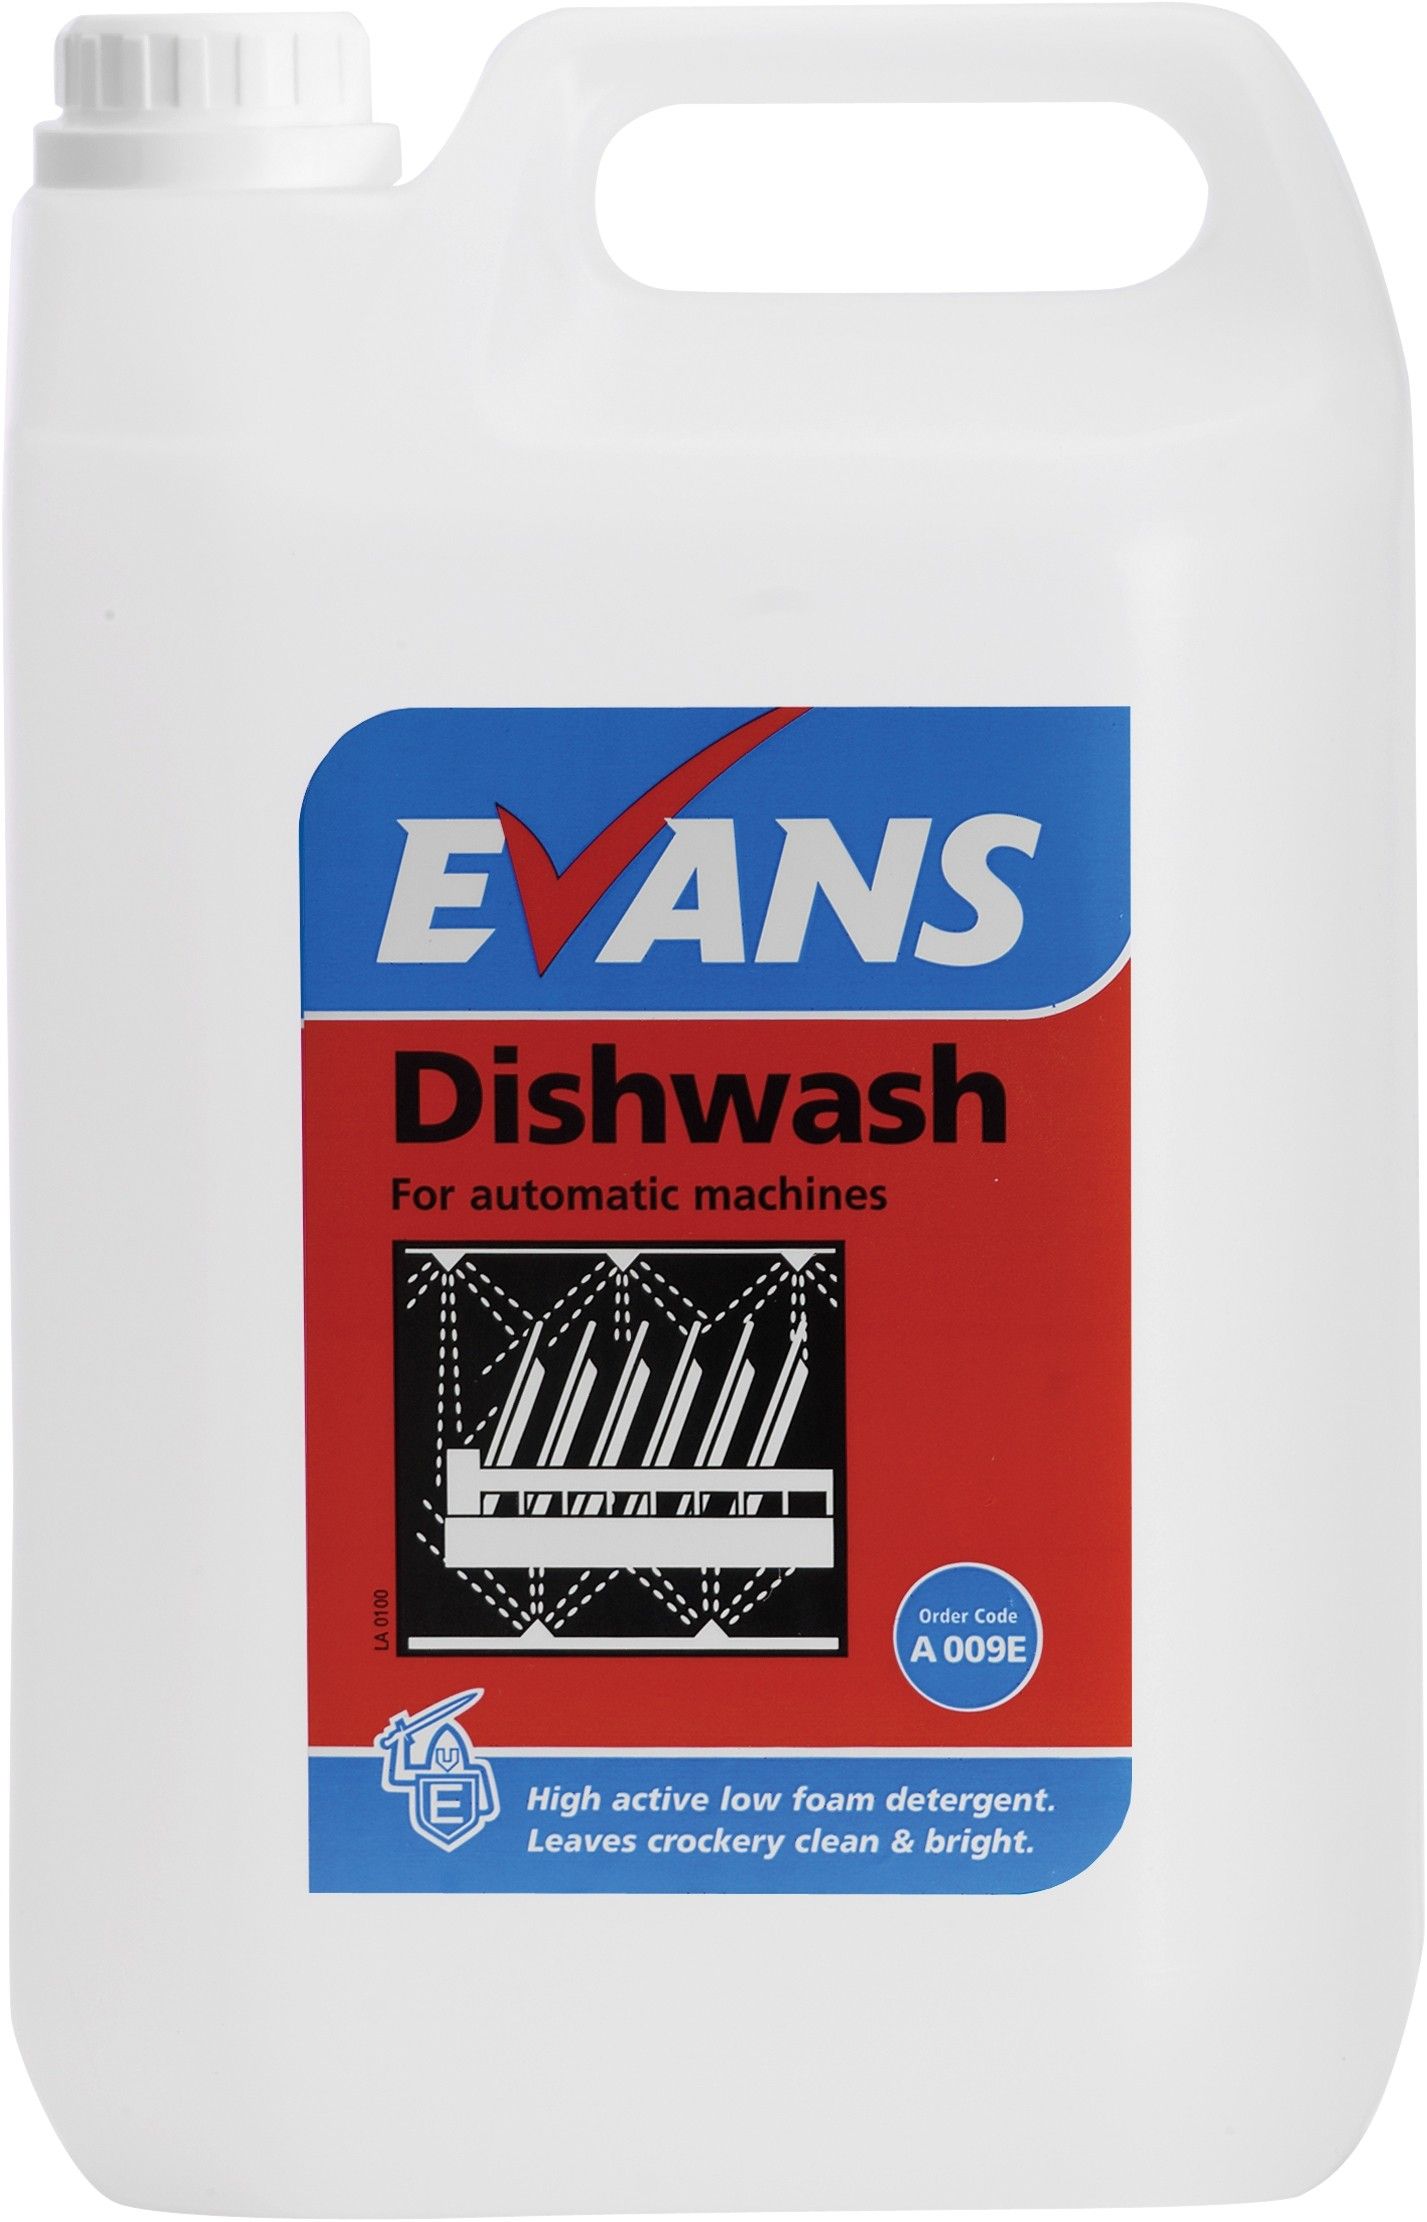 Evans Dishwash - General Machine Detergent 5 Ltr